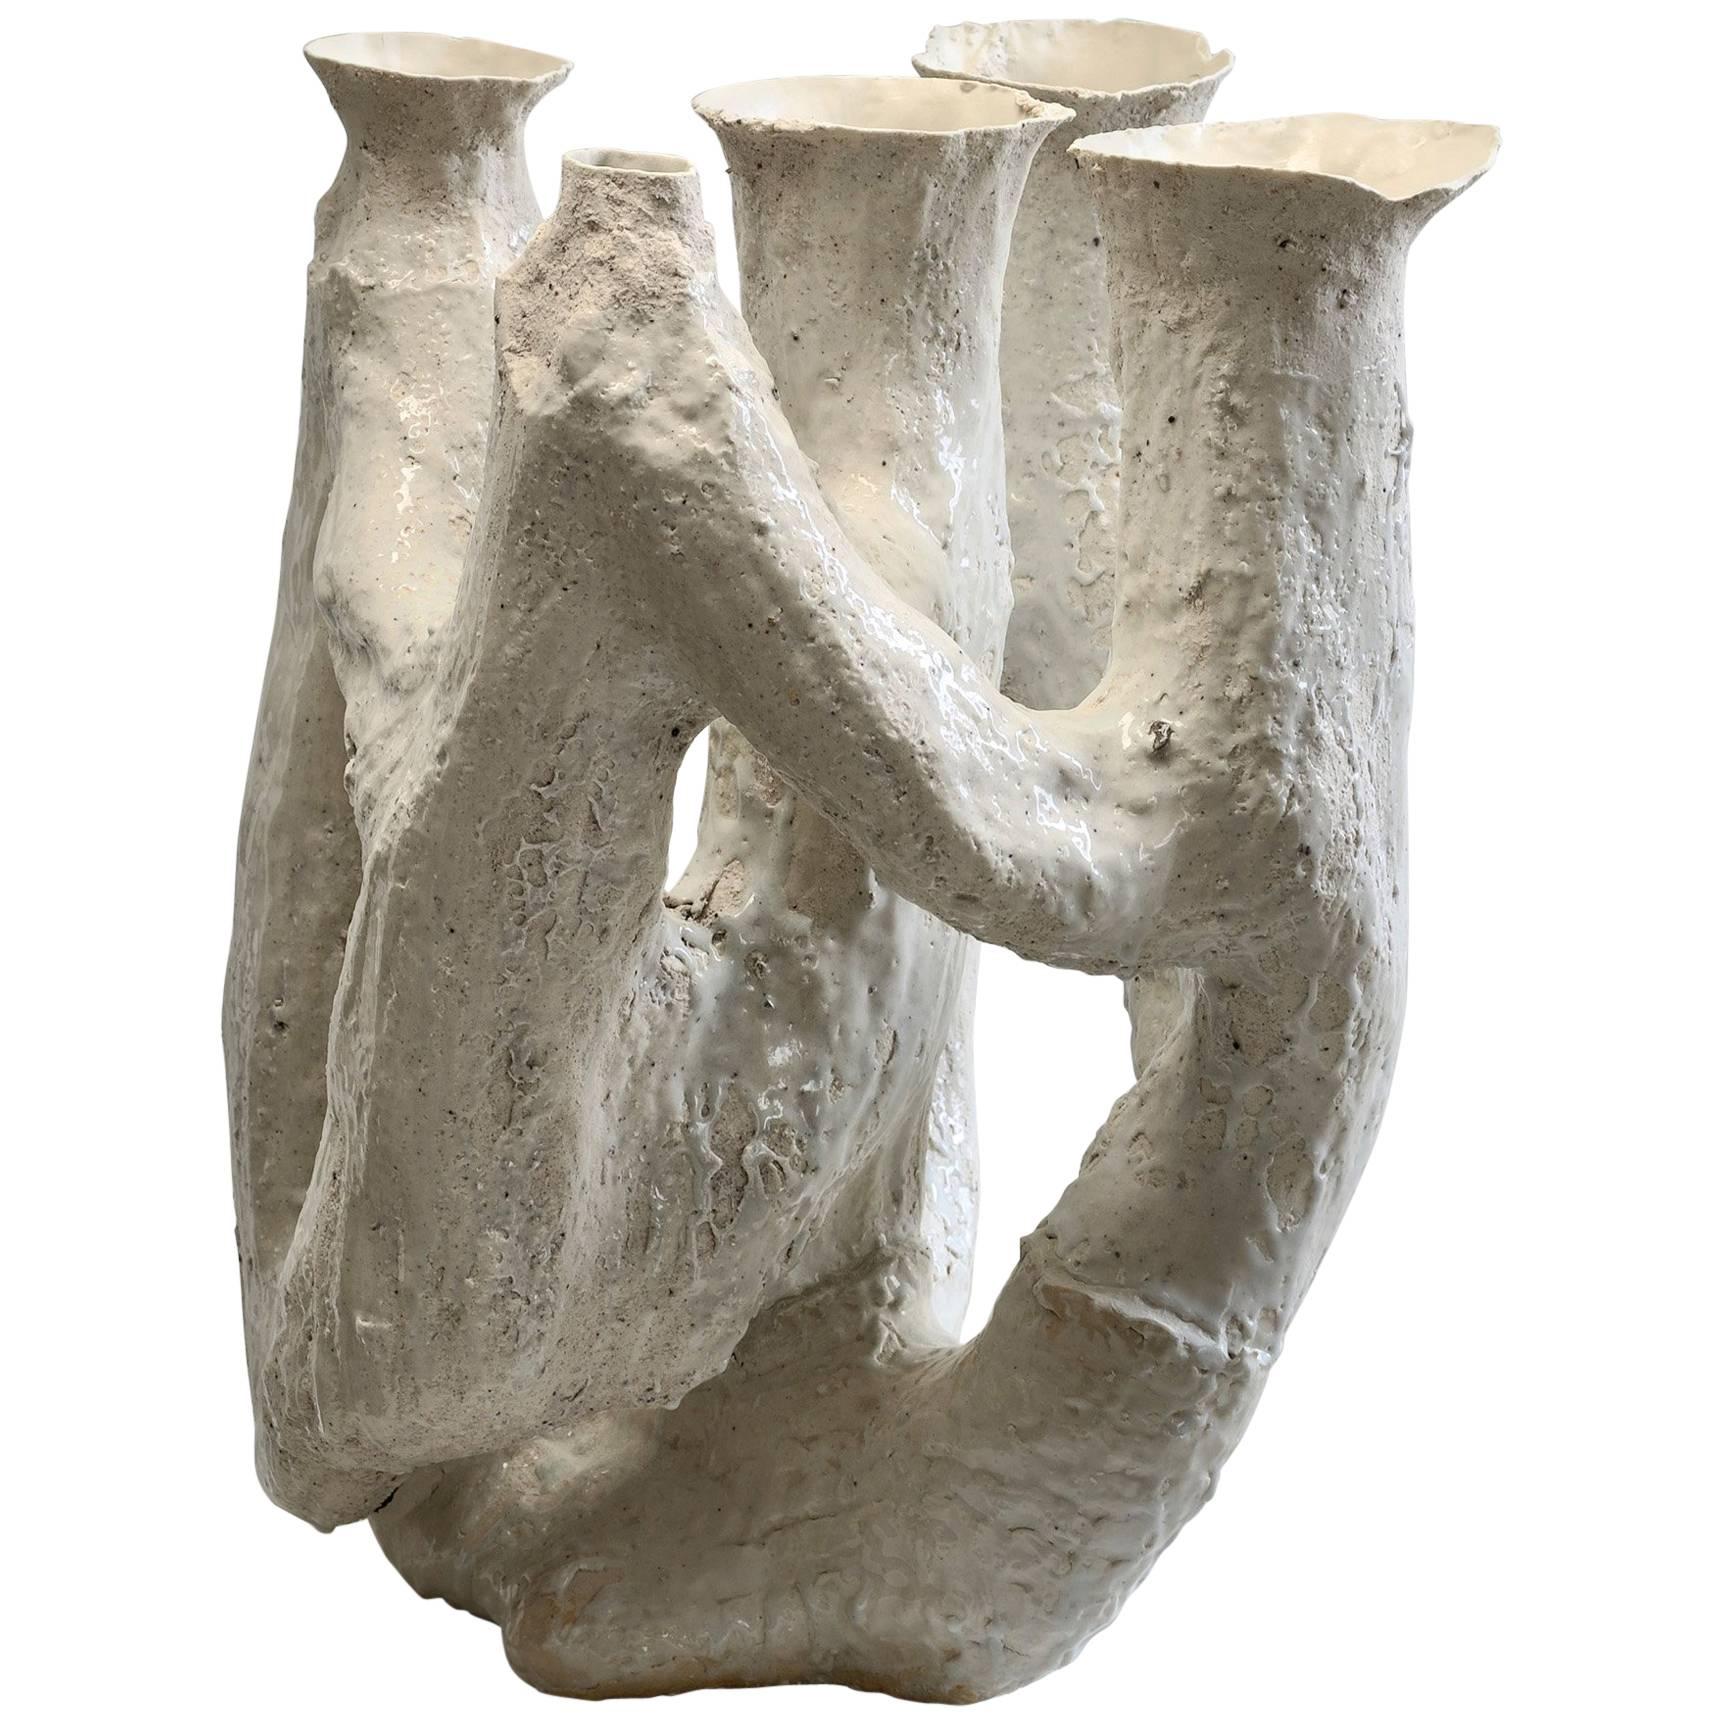 Contemporary '23' Cluster Glazed Ceramic Vessel or Vase by Johannes Nagel, 2015 For Sale